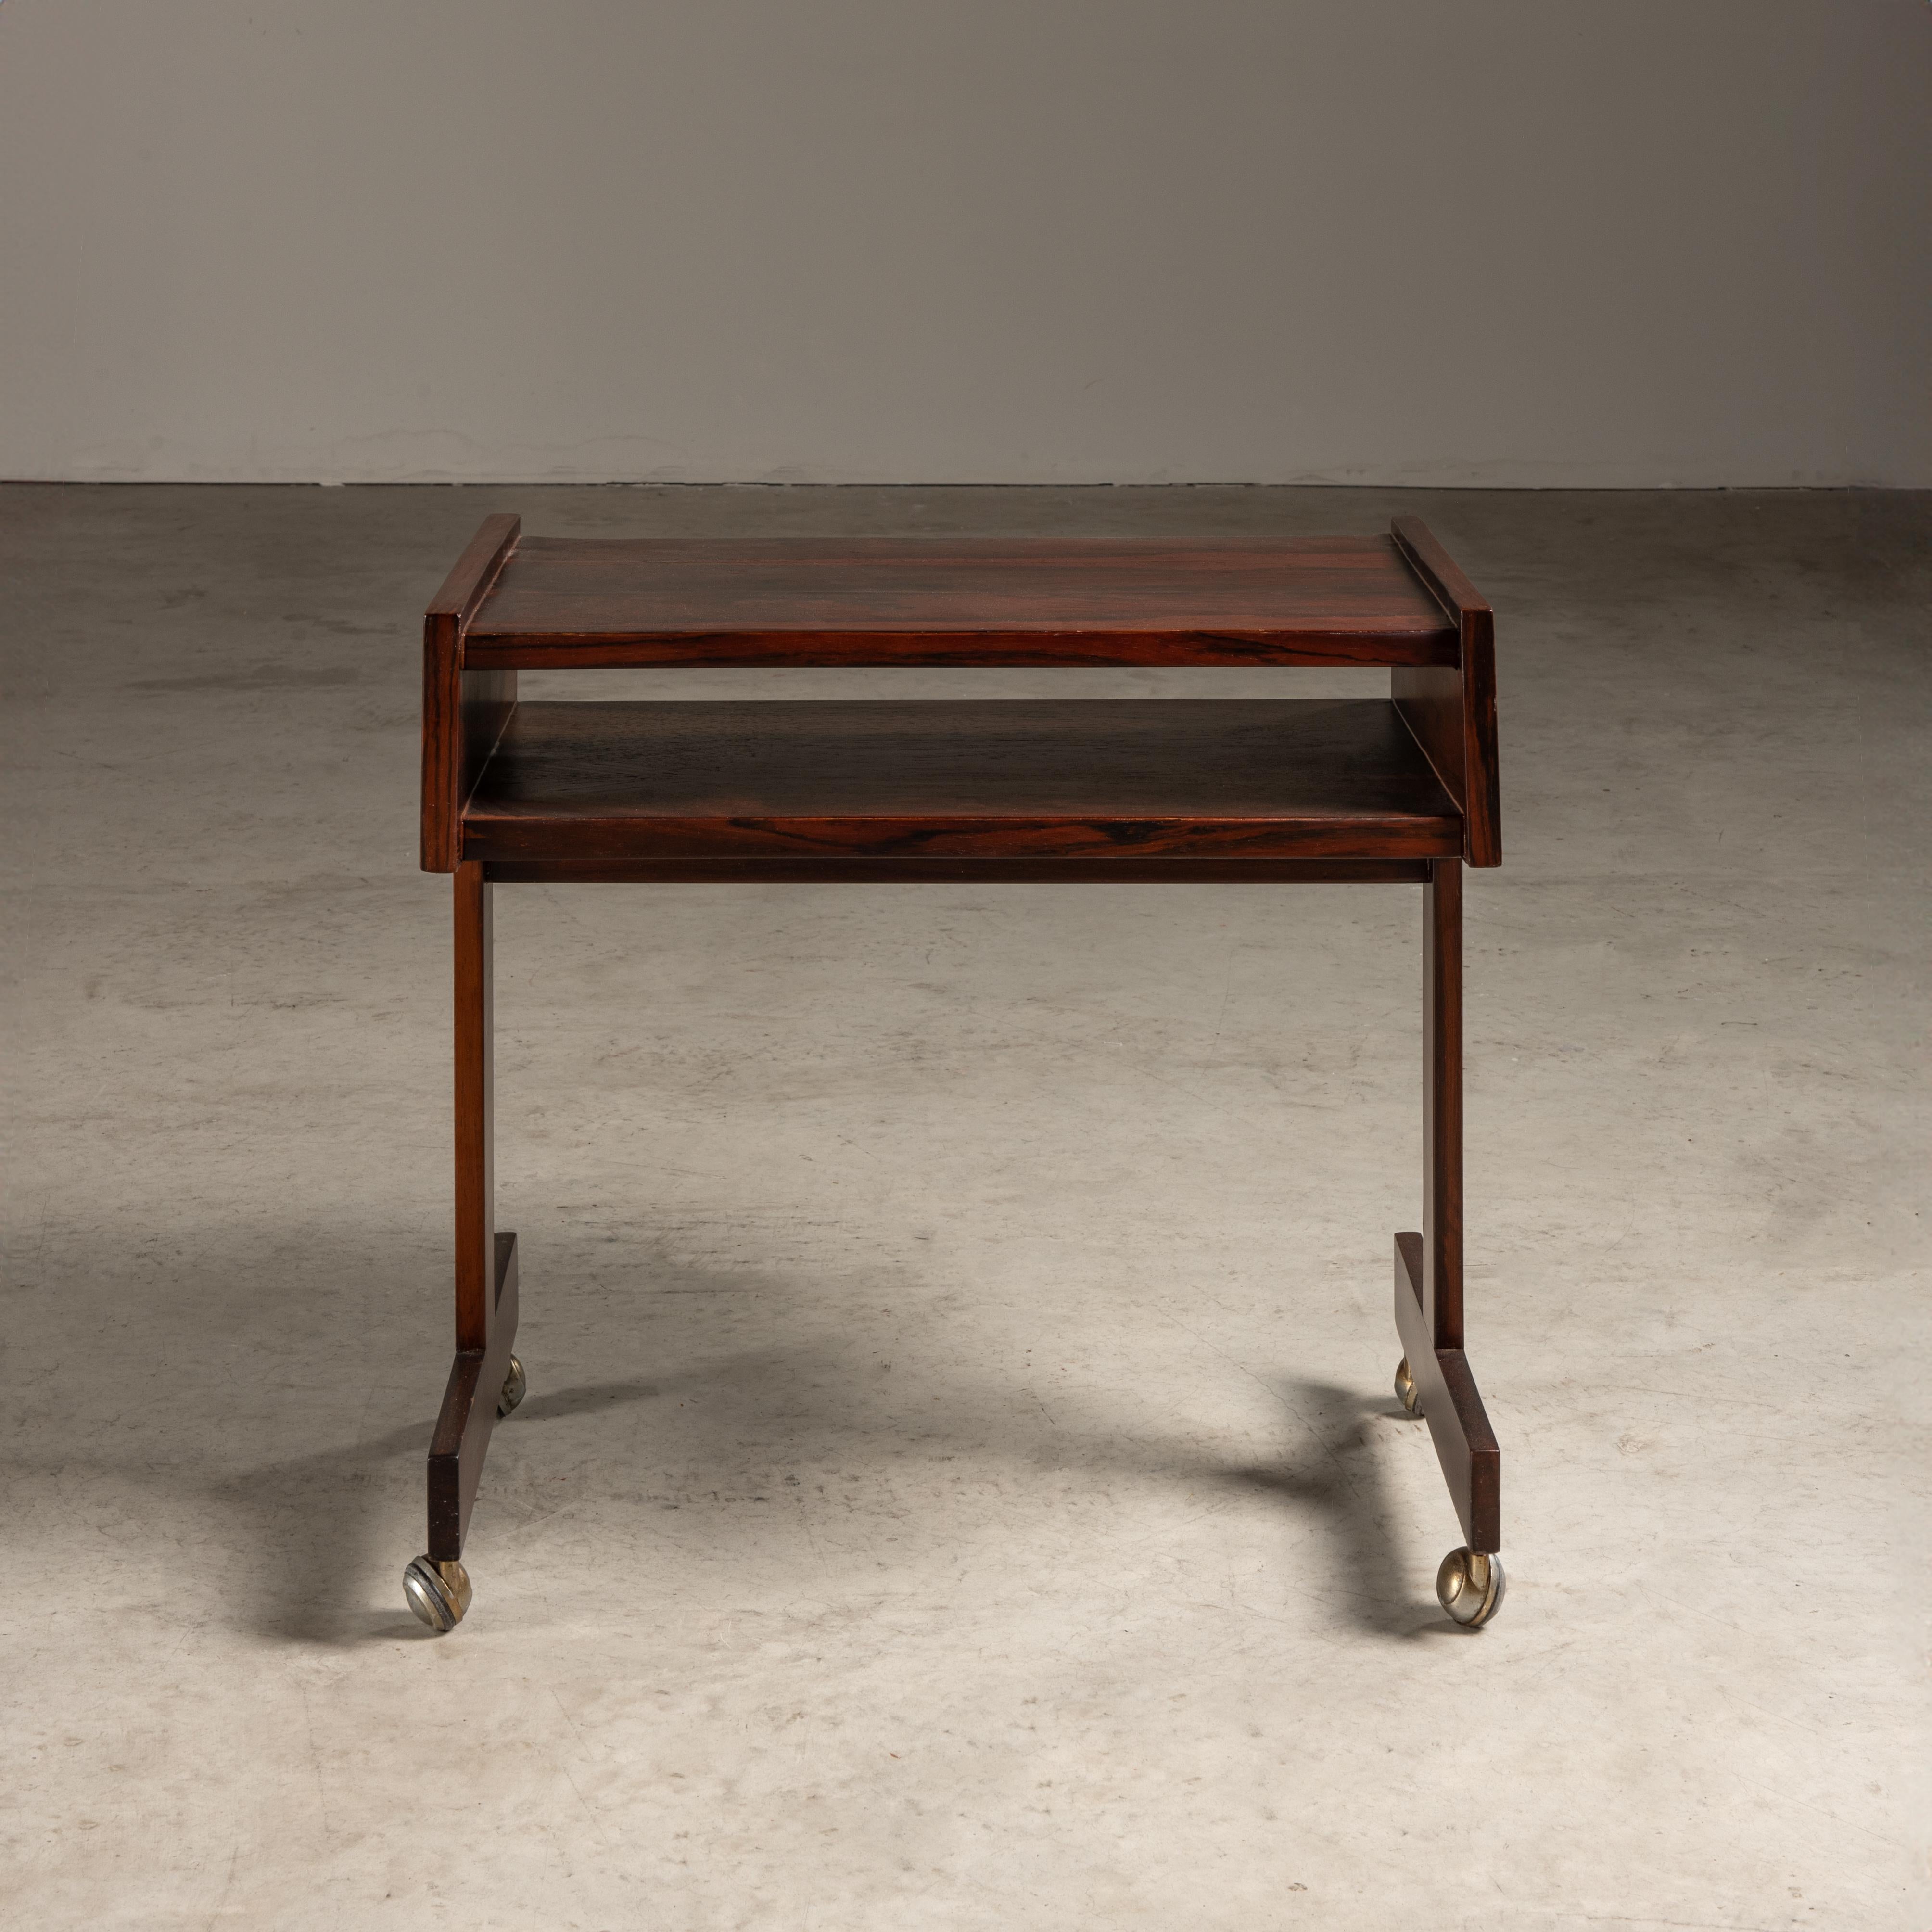 Dieser Beistelltisch von Sergio Rodrigues ist ein Inbegriff des brasilianischen Möbeldesigns aus der Mitte des Jahrhunderts, das Eleganz mit praktischer Funktionalität verbindet.

Der Tisch weist eine reiche, dunkle Holzkonstruktion aus